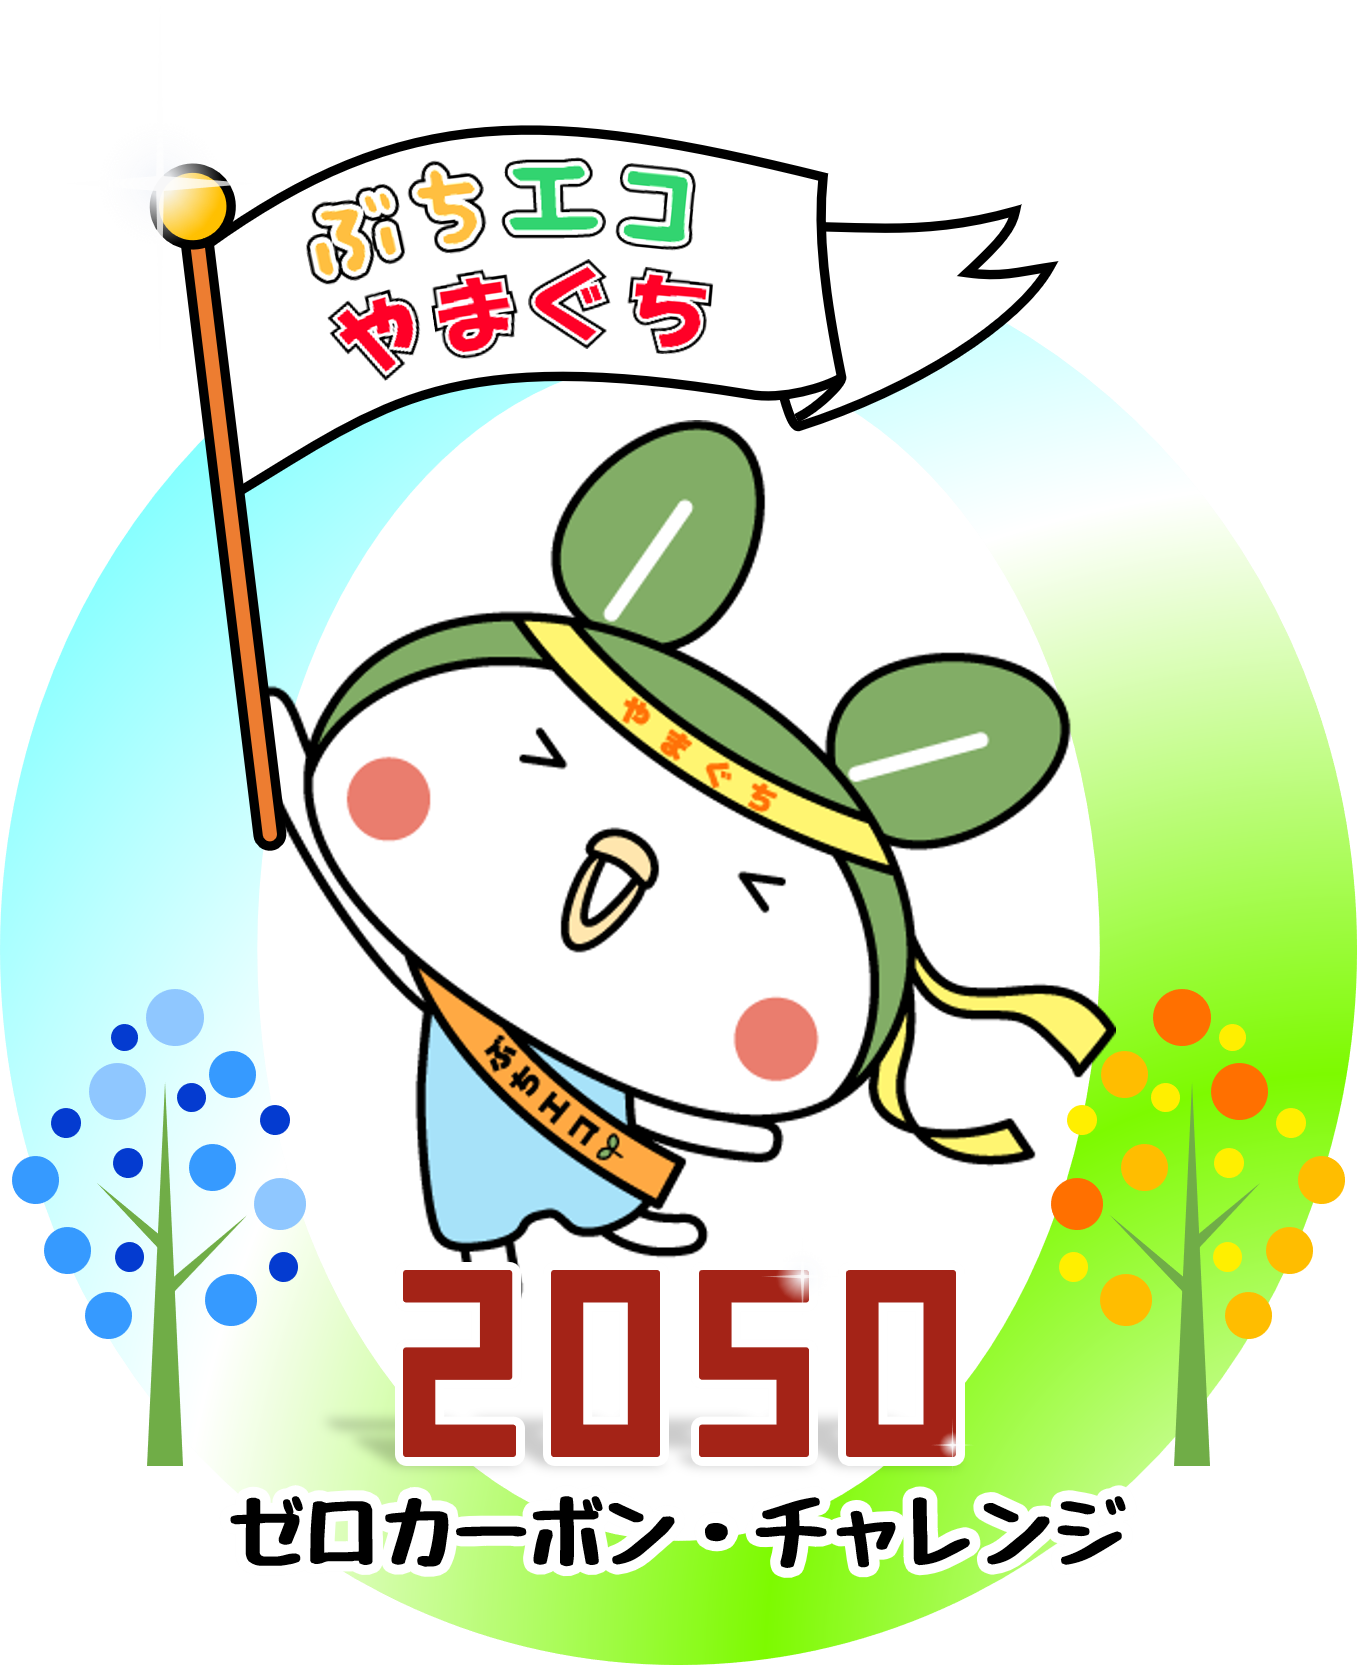 2050ゼロカーボン・チャレンジ_ロゴ